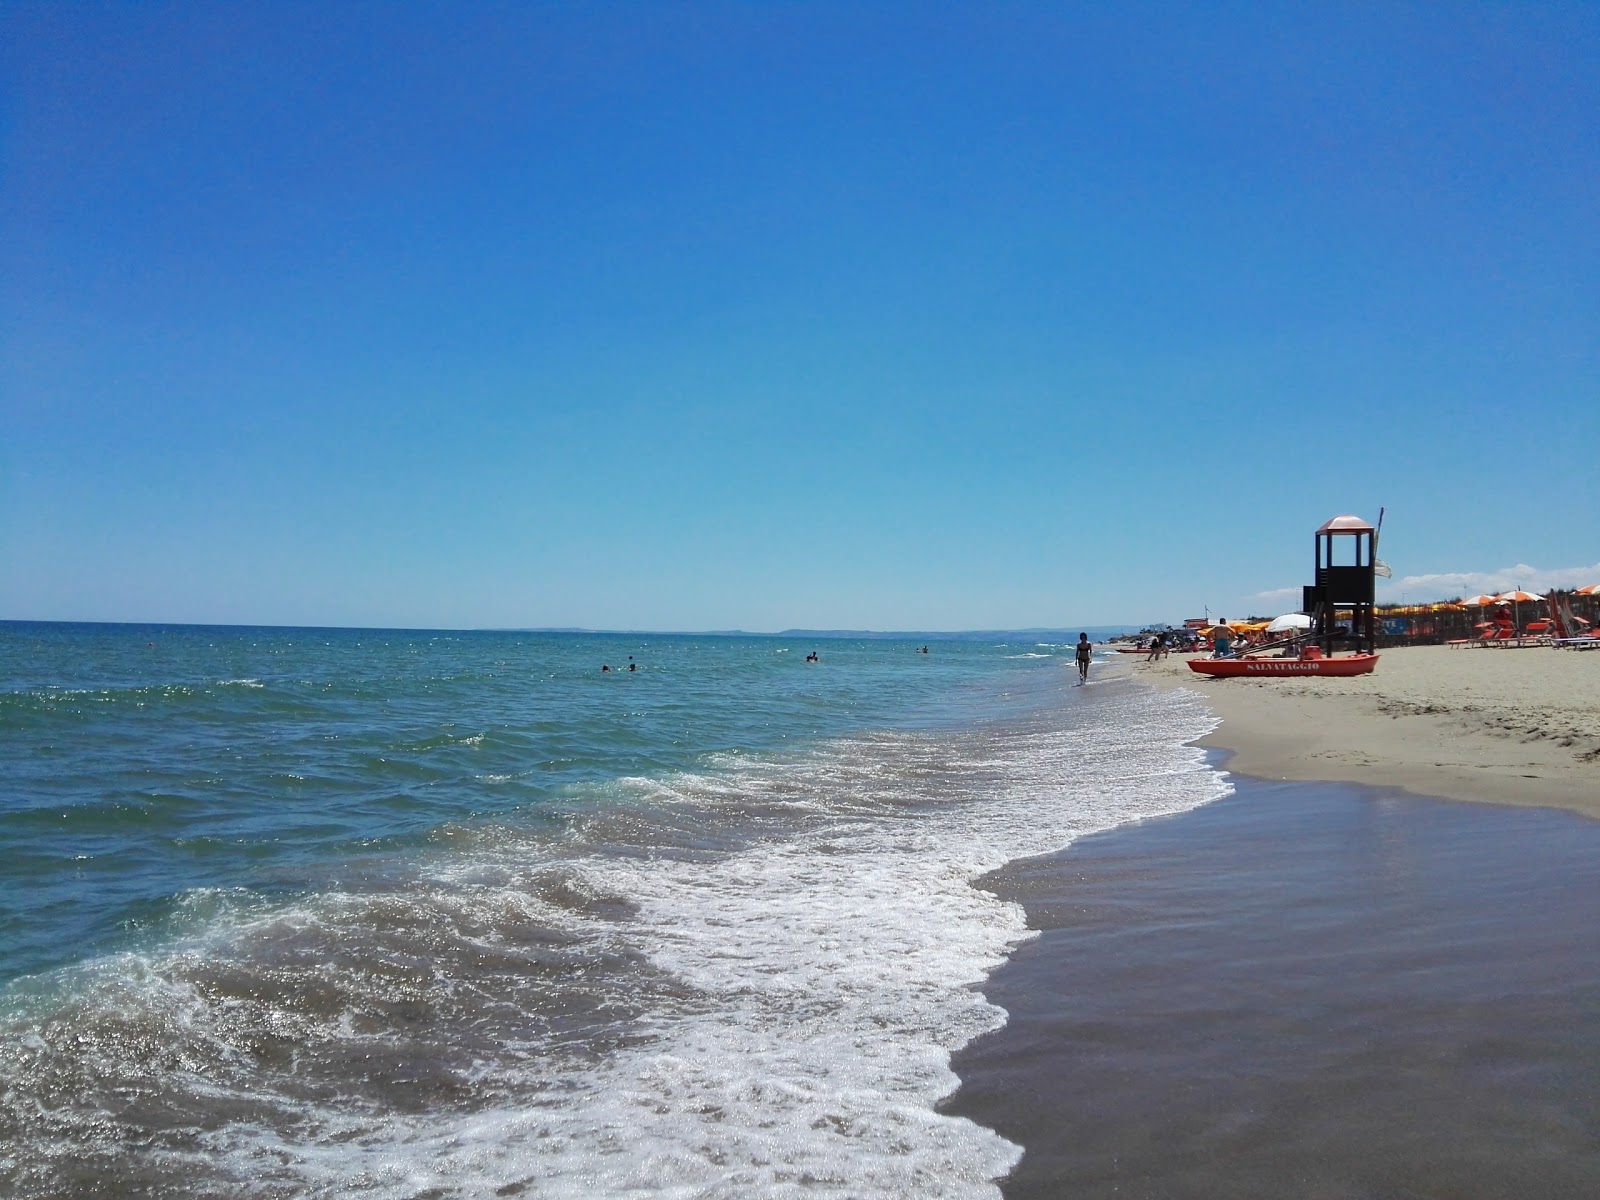 Fotografie cu Catania beach II cu o suprafață de nisip maro fin